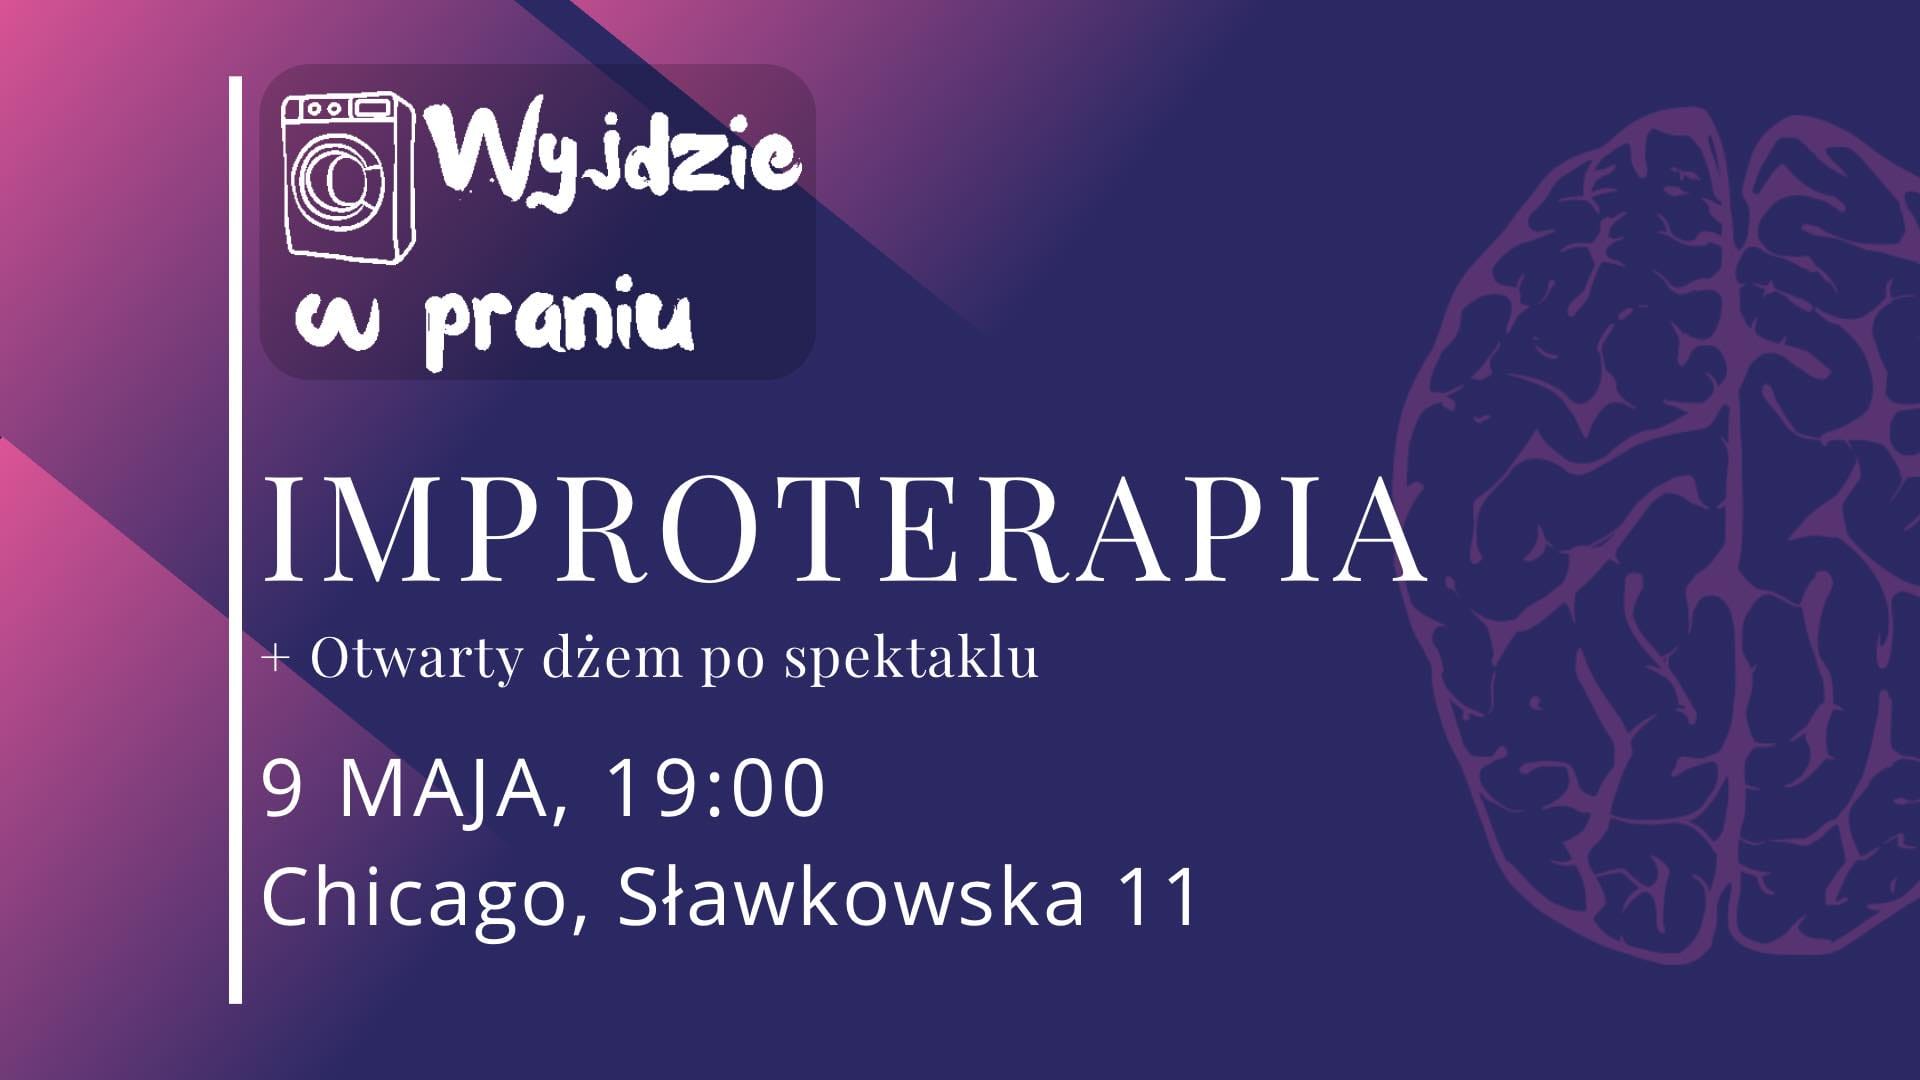 improterapia - IMPROTERAPIA | występ grupy Wyjdzie w Praniu + OTWARTY DŻEM